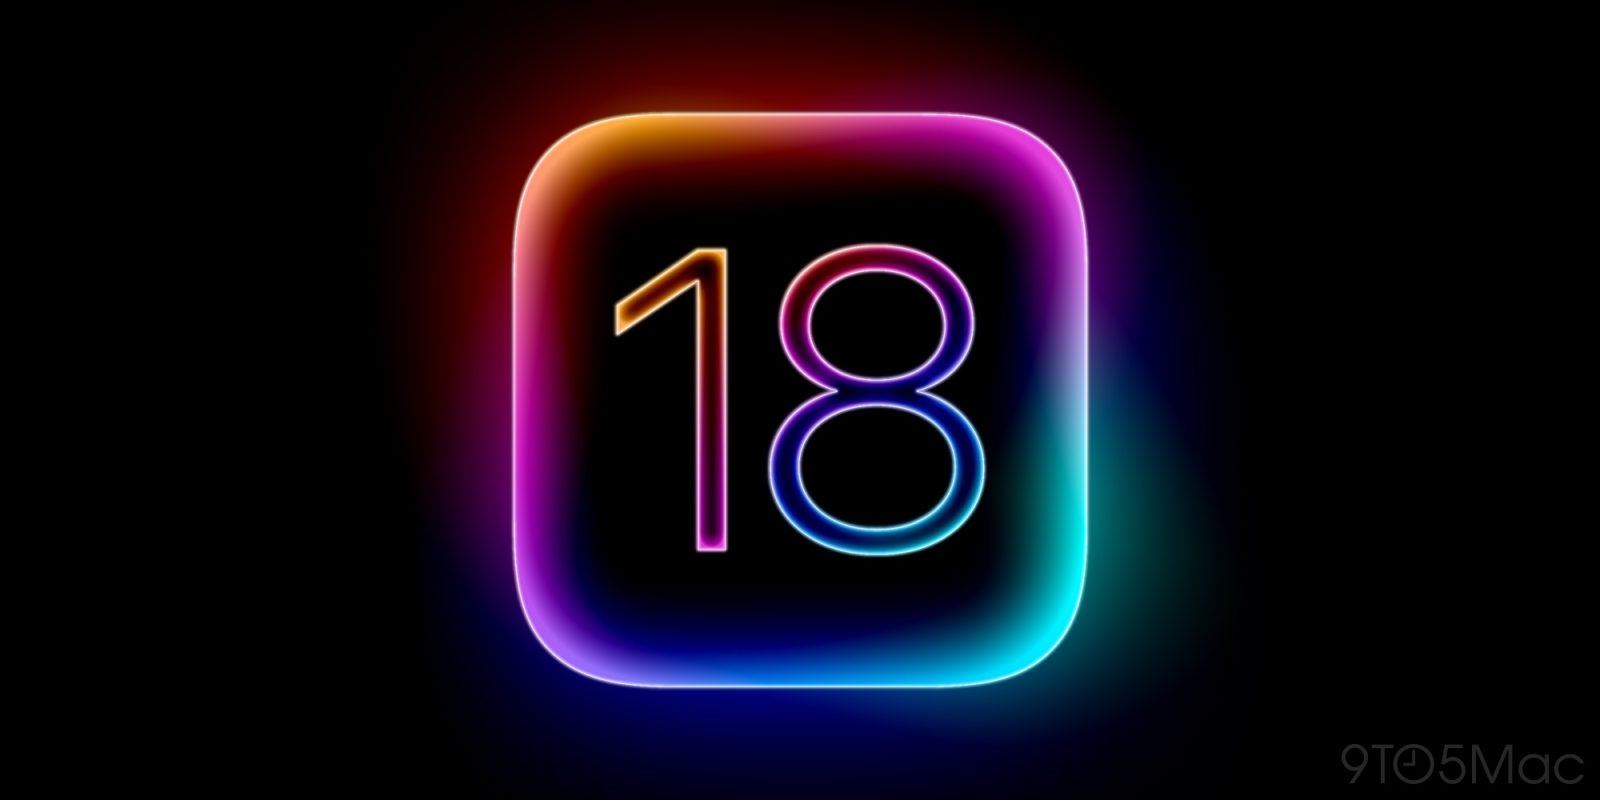 iOS 18 vuelve a ser considerado “el rediseño más ambicioso” del iPhone hasta la fecha